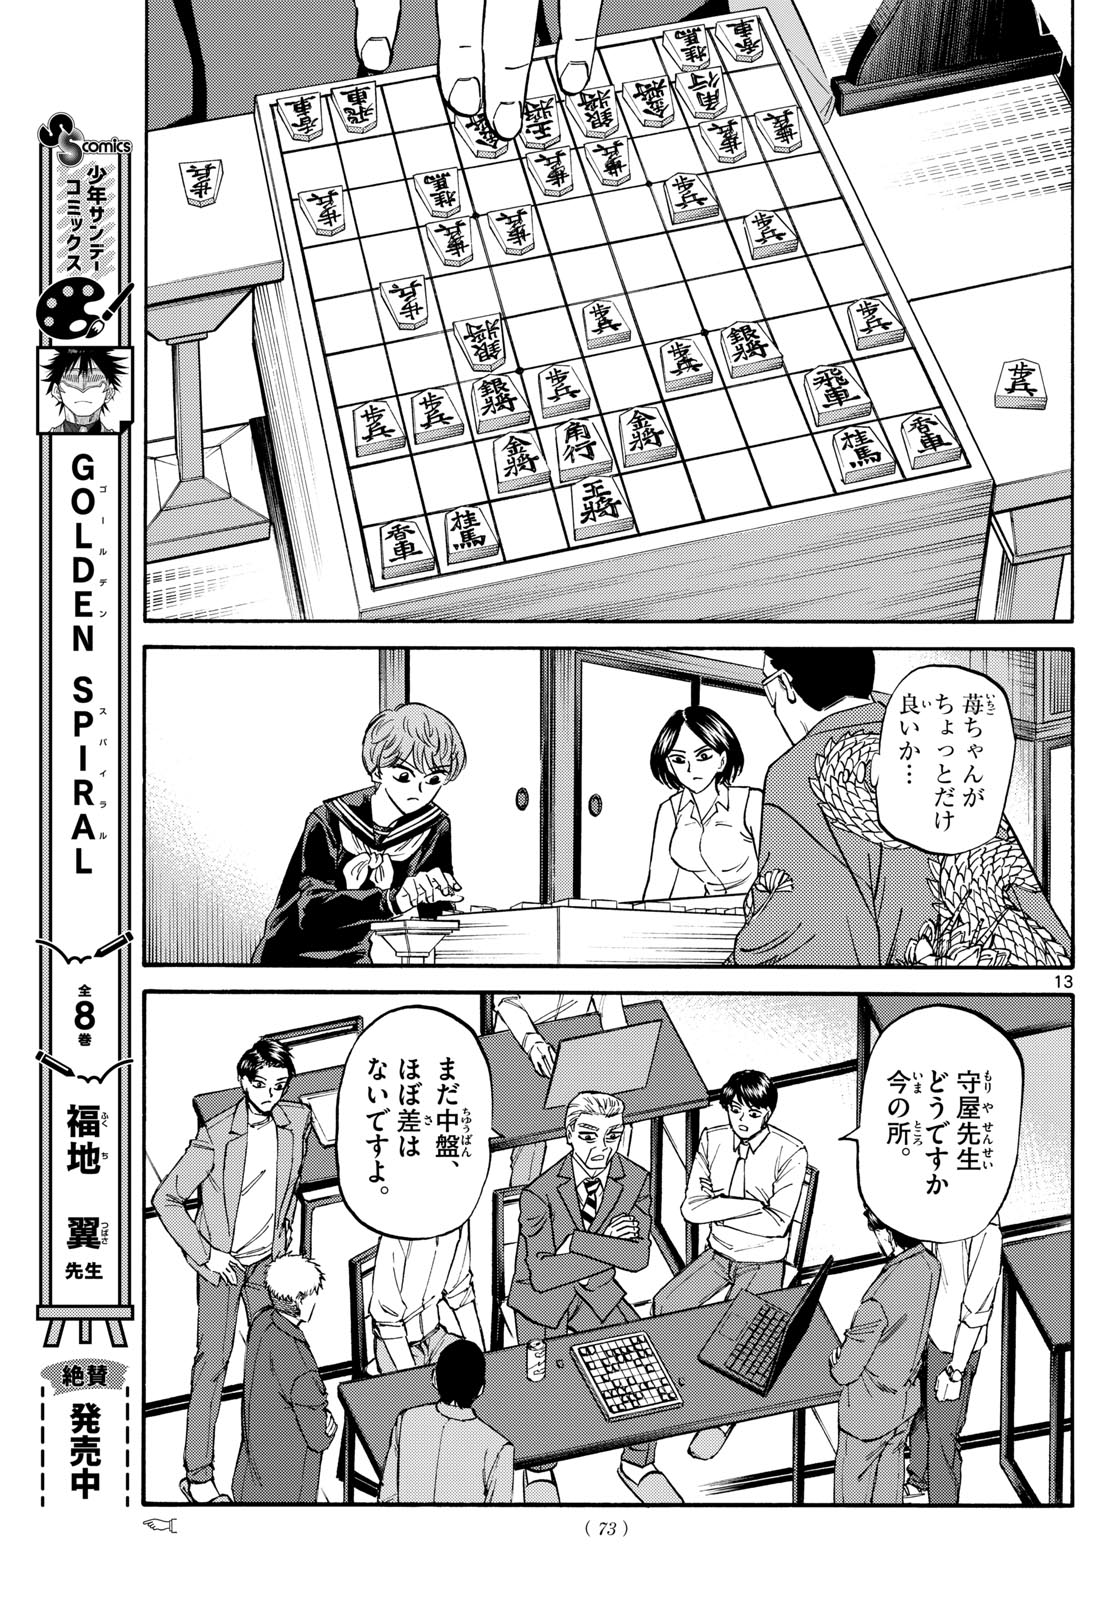 Tatsu to Ichigo - Chapter 169 - Page 13